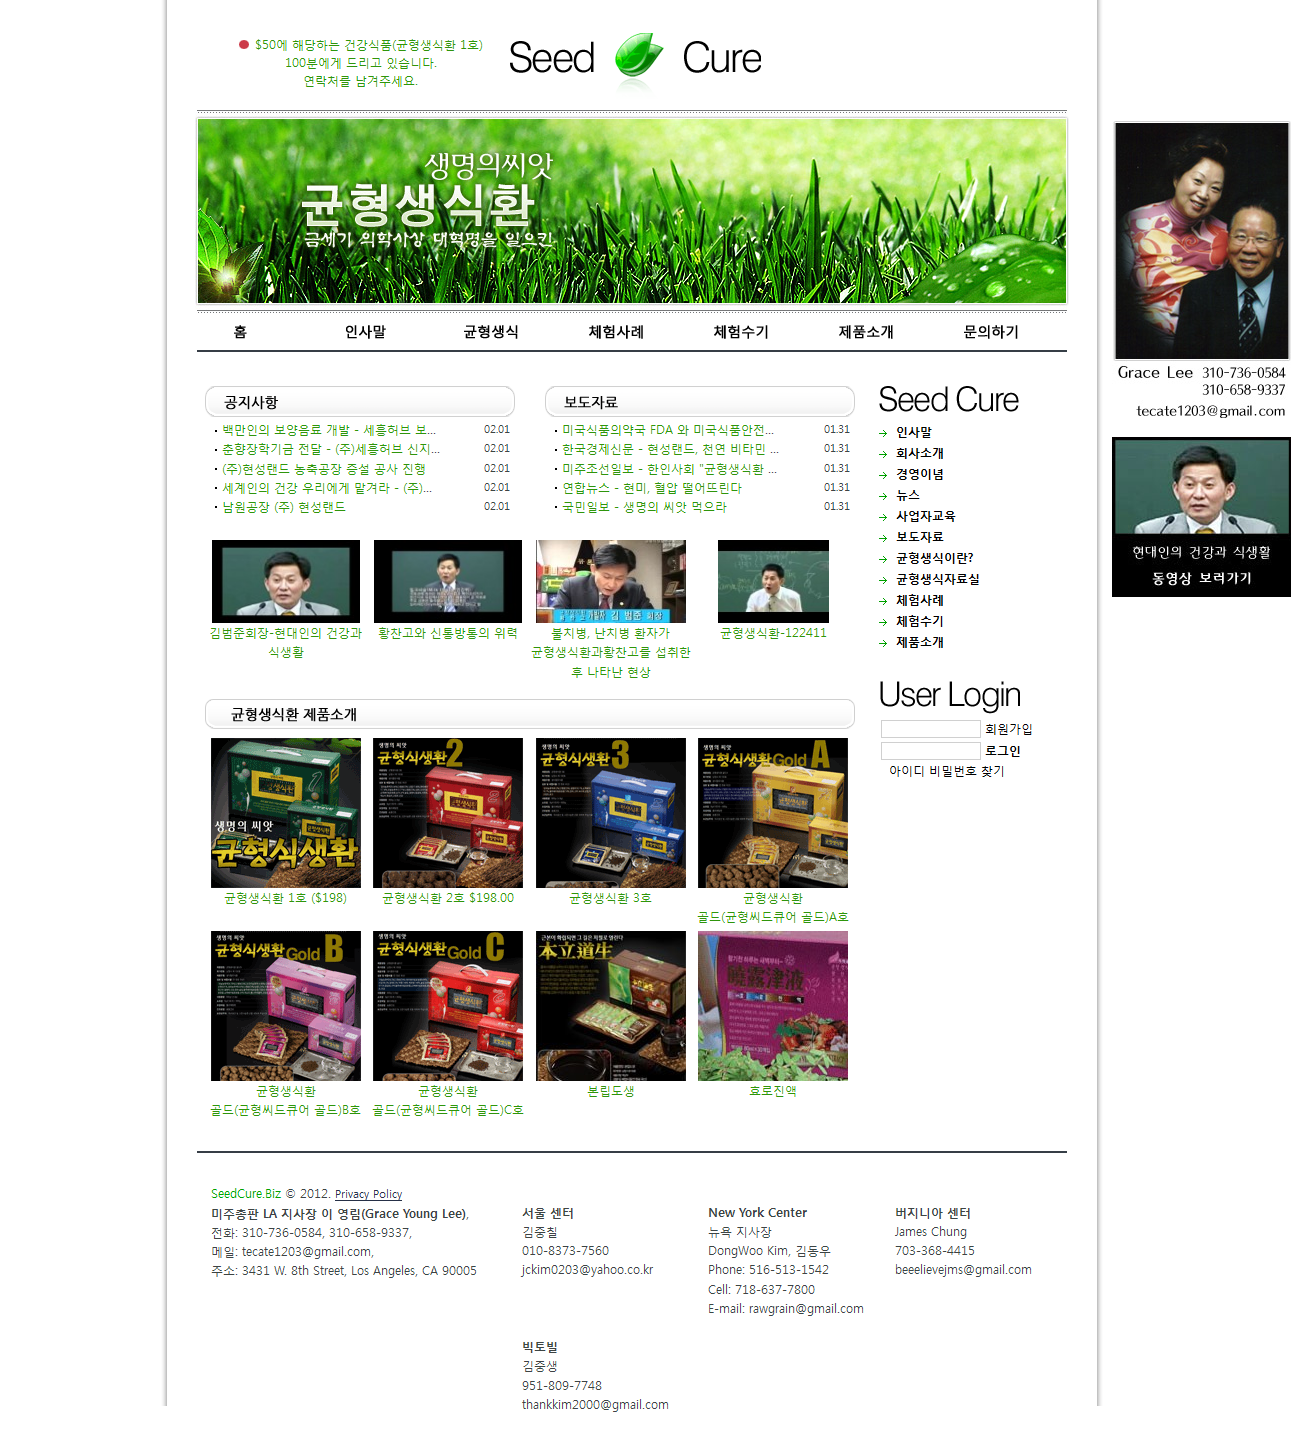 FireShot Screen Capture #064 - '생명의 씨앗, 균형생식환 - 혈압, 전립선, 당뇨, 비만환자를 위한 자연식품 Seed Cure (Tel_ 310-736-0584, 310-658-9337)' - seedcure_bkihost5_com_web.png